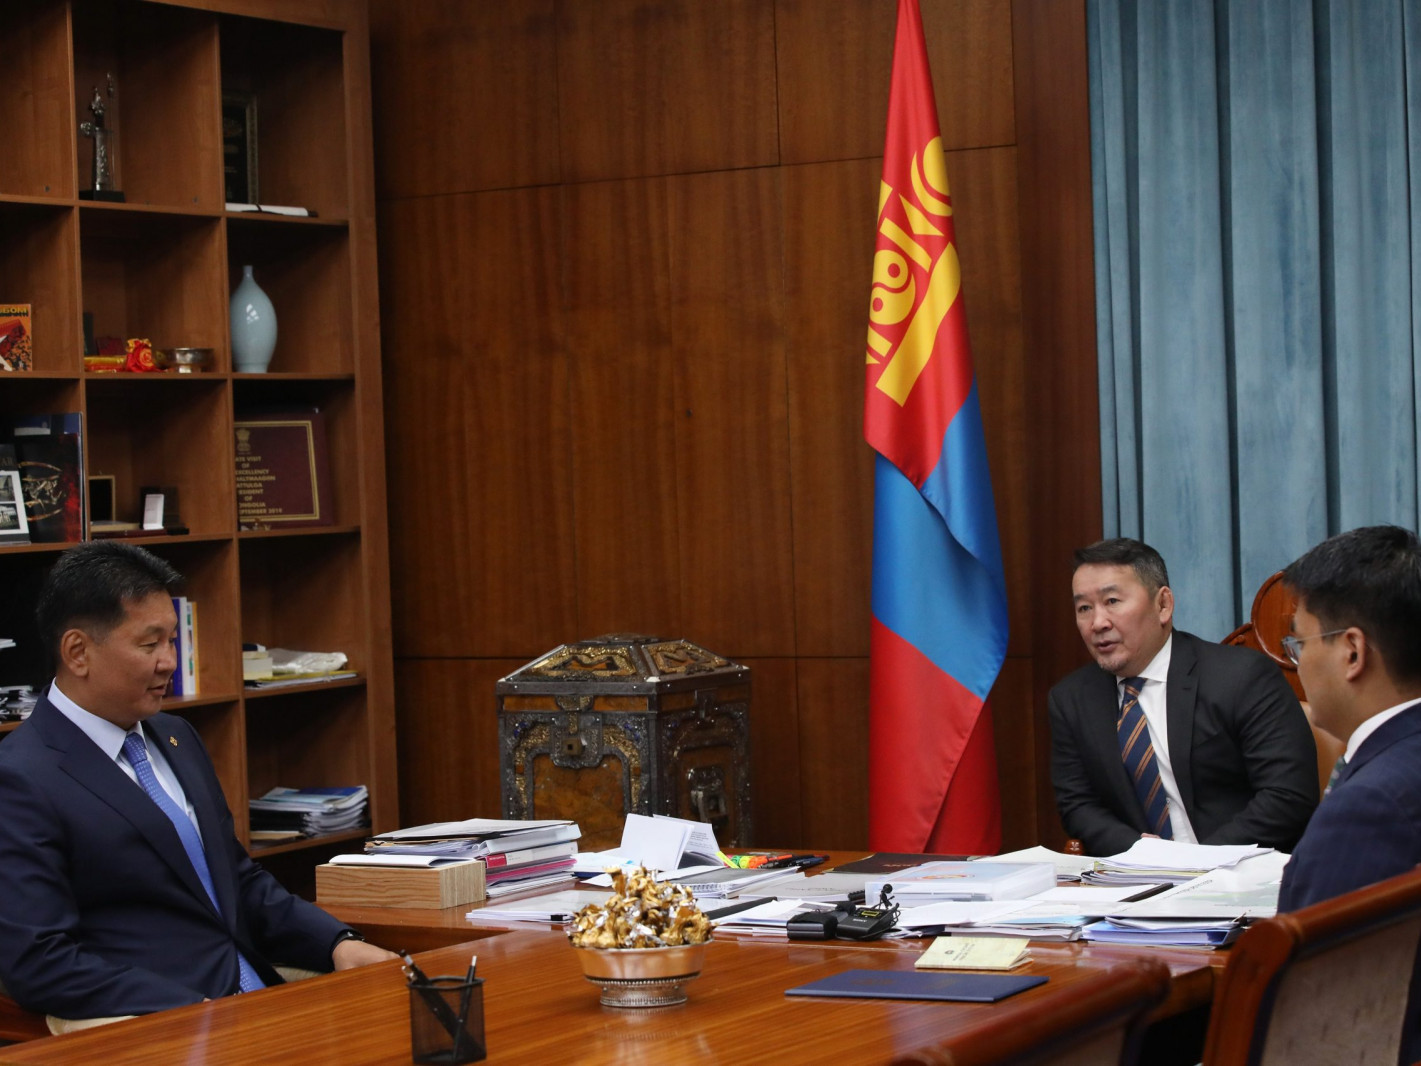 Х.Баттулга: Монголоо гэх сэтгэлтэй сайд нарыг томилно гэдэгт итгэлтэй байна 